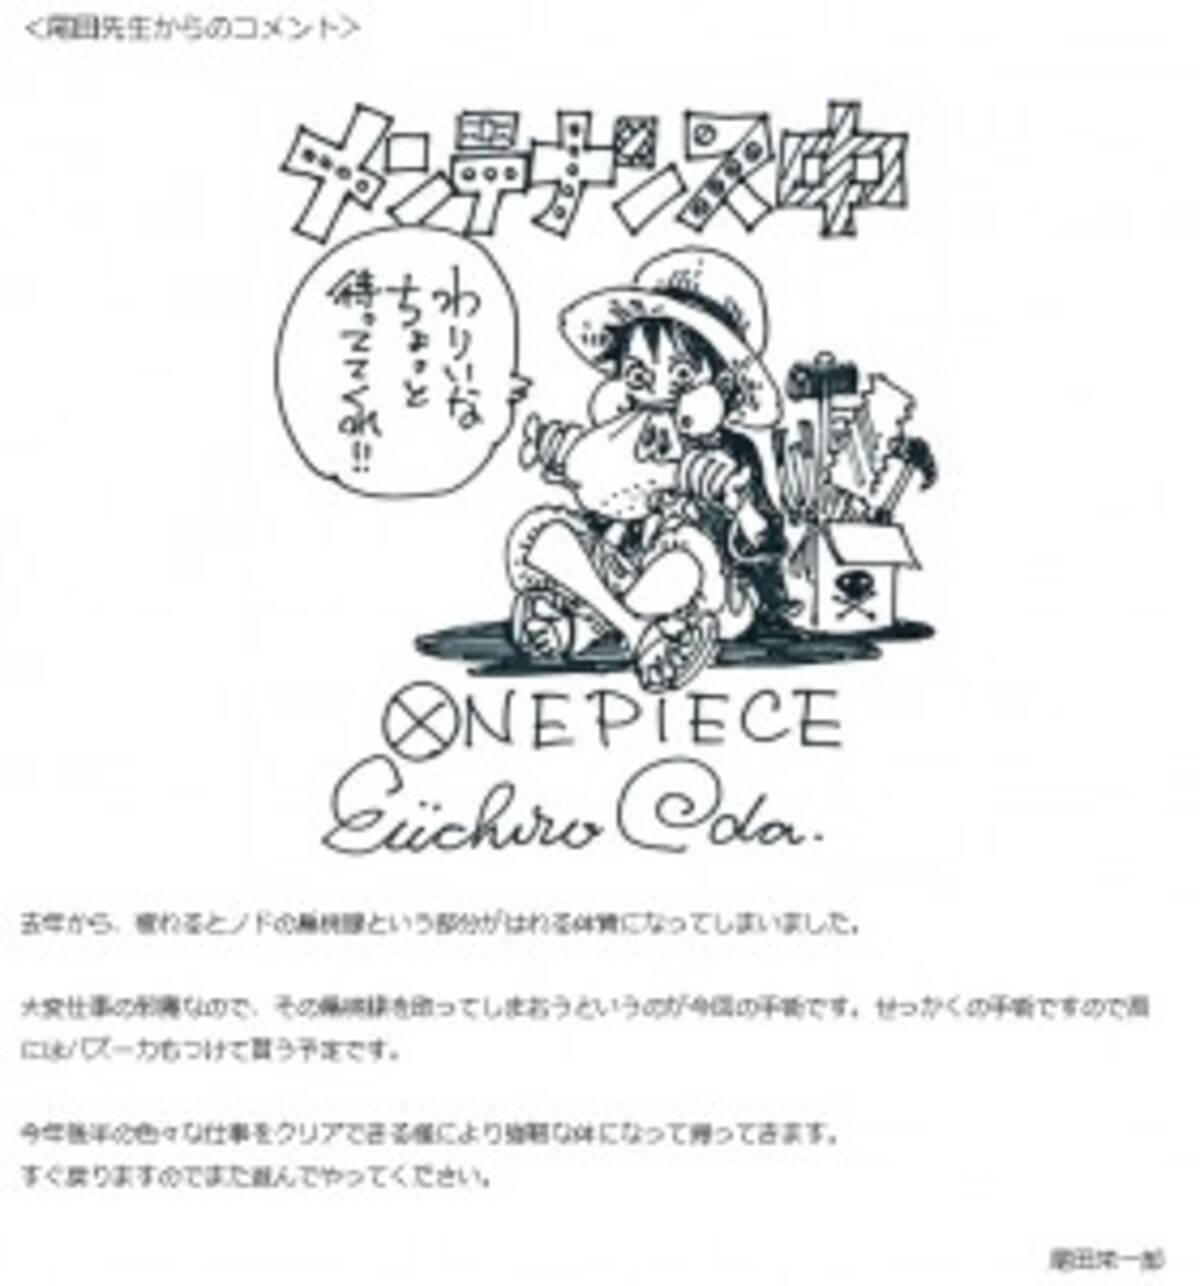 尾田栄一郎手術のため One Piece 休載 肩にはバズーカもつけて貰う予定です 14年5月28日 エキサイトニュース